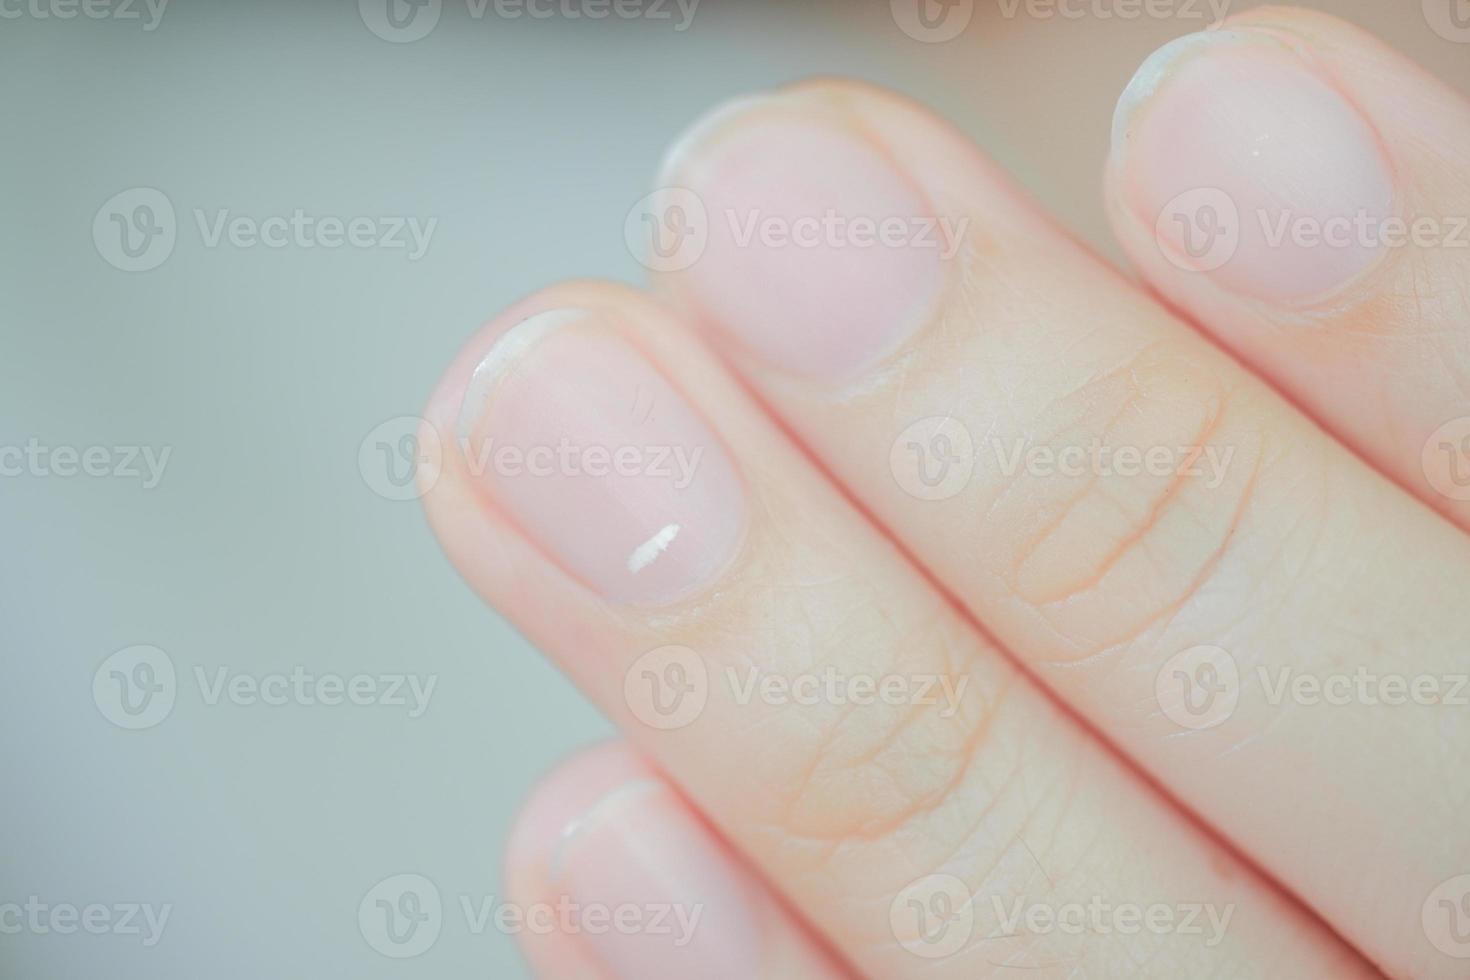 des taches blanches sur les ongles appelées leuconychies révèlent l'apparition de problèmes de santé. photo